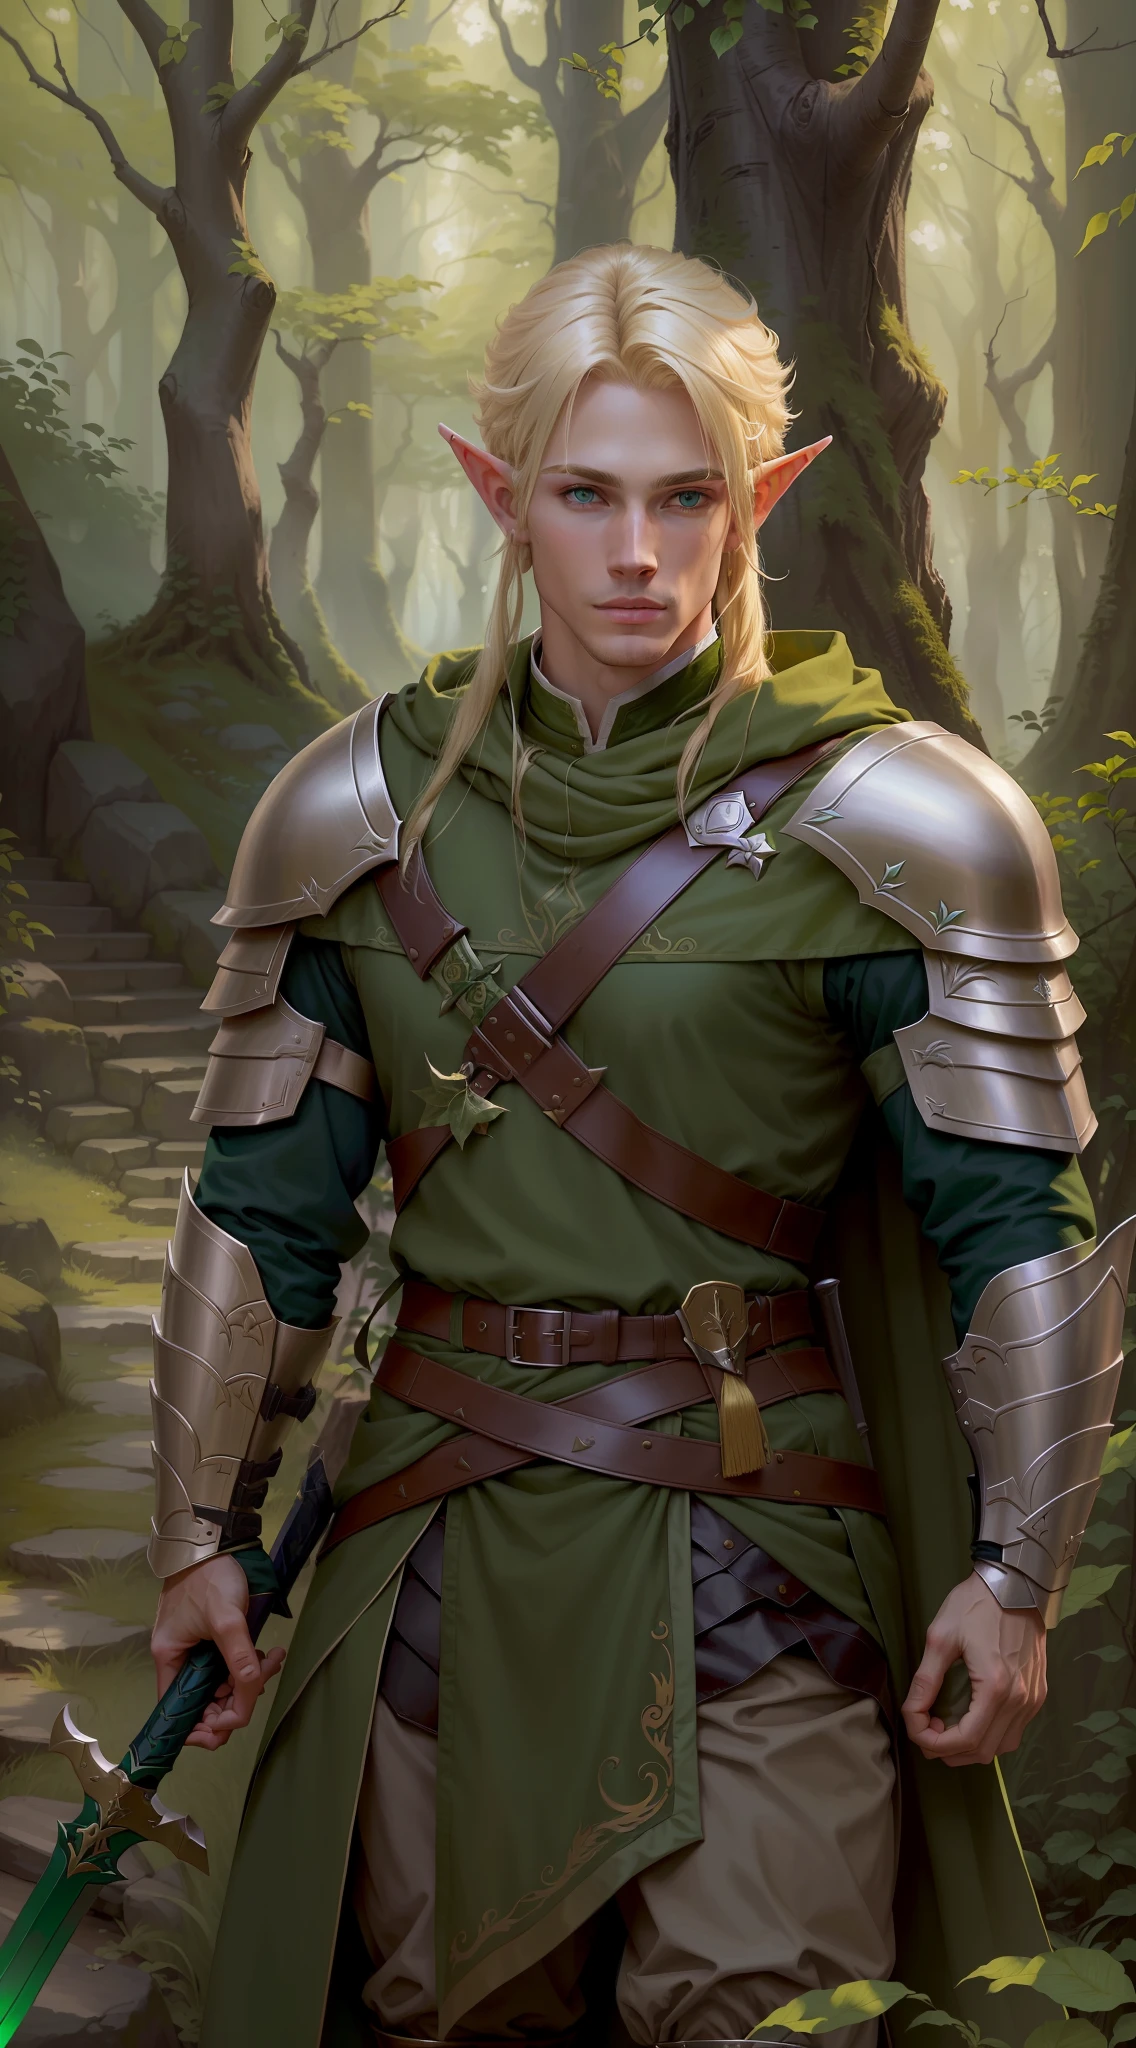 светловолосый эльф в зеленом костюме держит меч в лесу, мужчина-эльф-рейнджер, blonde мужчина-эльф-рейнджер, a portrait of мужчина-эльф, красивый мужчина-эльф, эльф мужчина, мужчина-эльф, эльфийский блондин-воин, портрет эльфийского воина, разбойник-эльф, мужчина, портрет лесного мага, вдохновленный Крисом из Дельтарруны,  ((очень поношенная одежда))